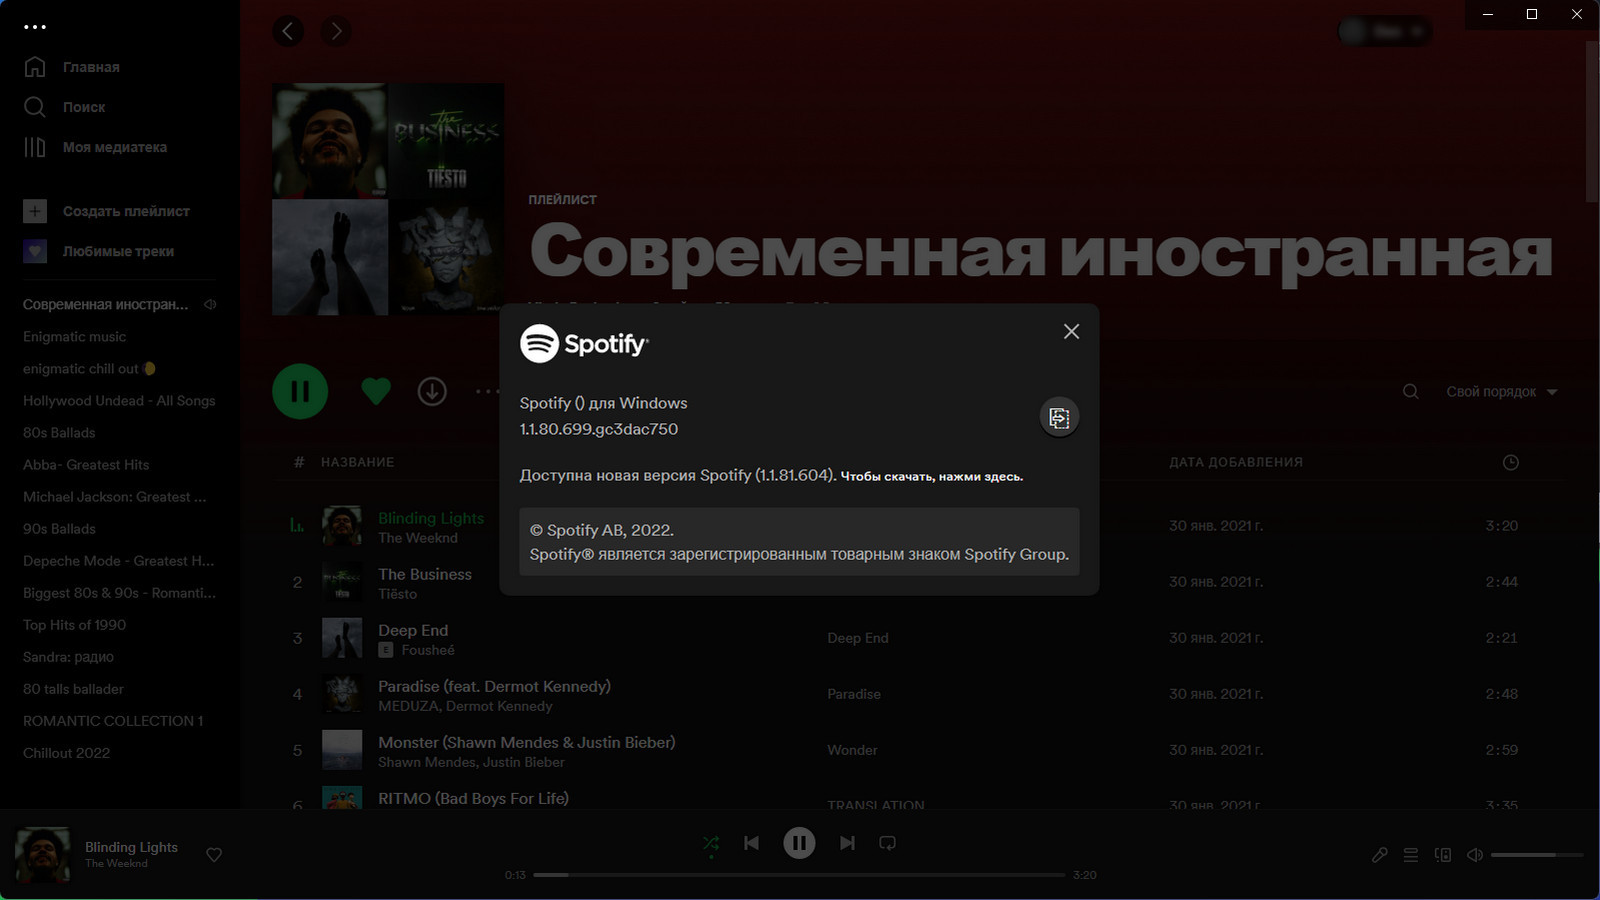 Spotify 1.1.80.699 (Repack & Portable) by Elchupacabra [Multi/Ru]